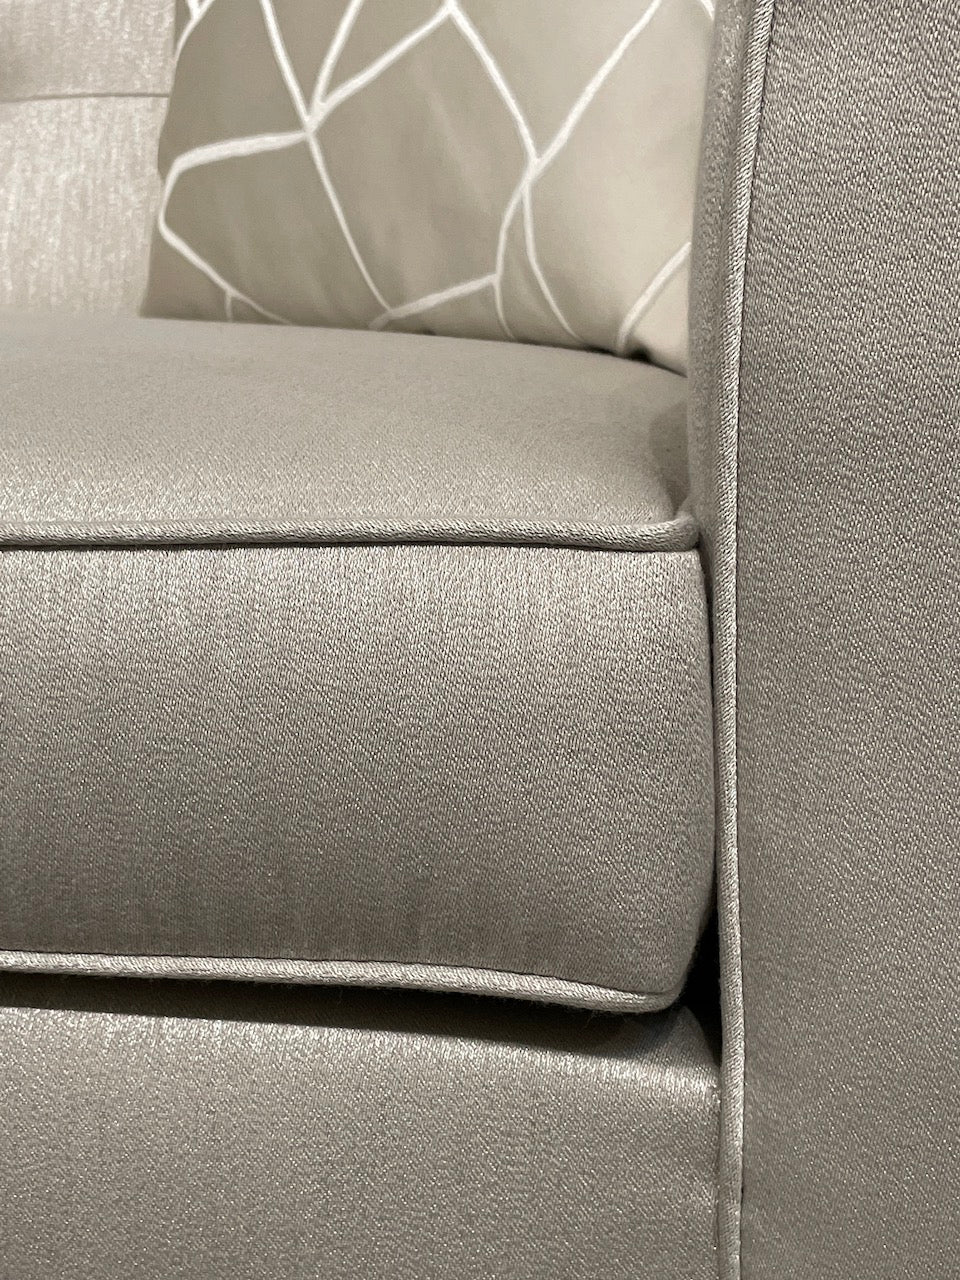 Diamanti 3 Seater - Future Classics Furniture